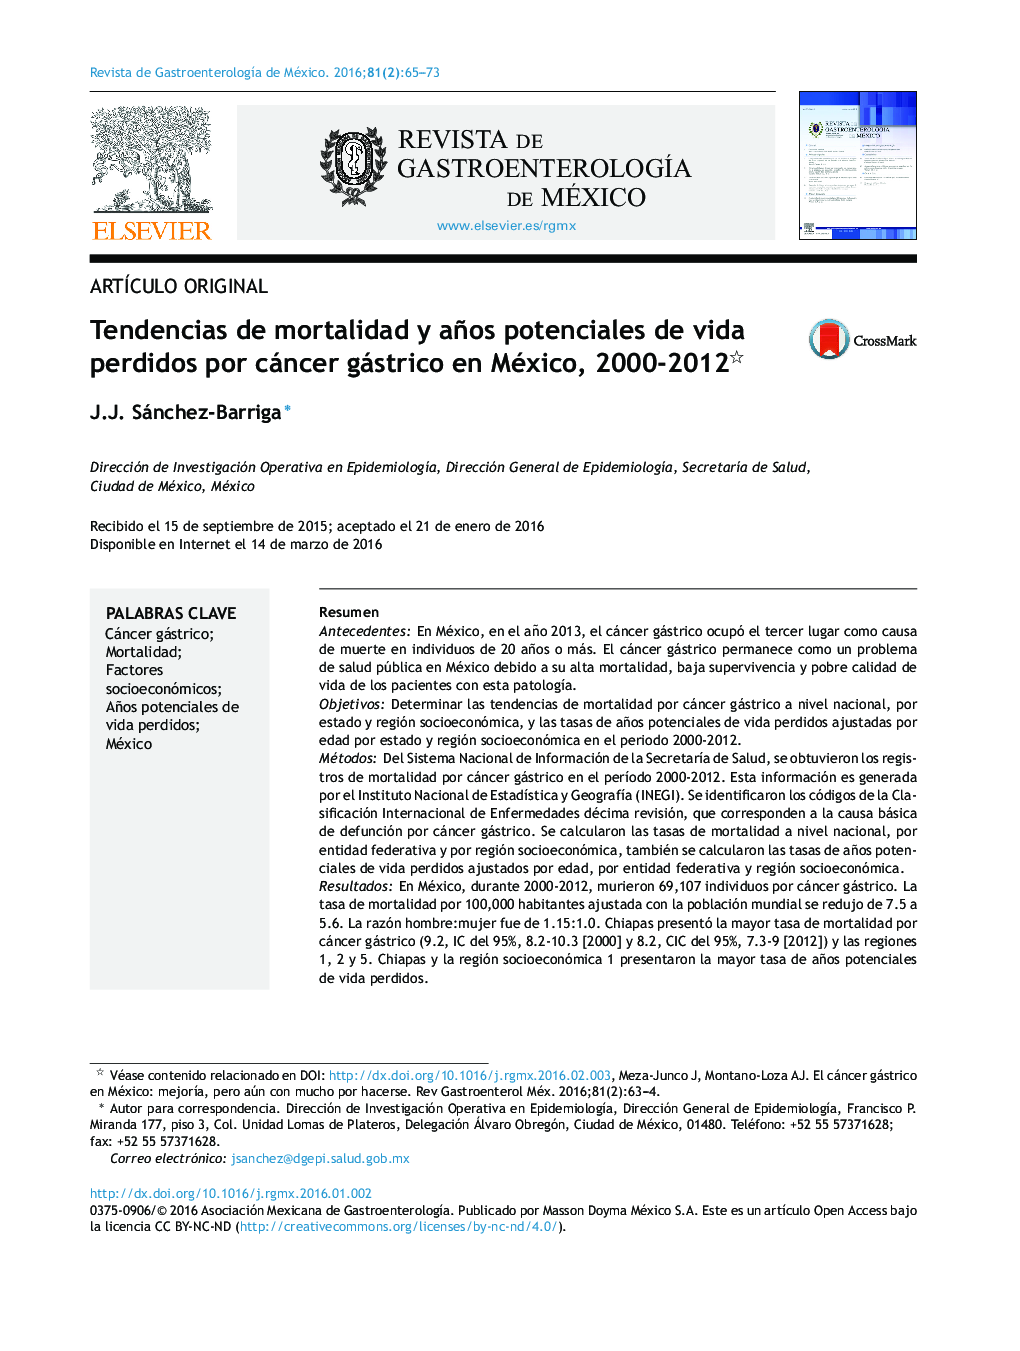 Tendencias de mortalidad y años potenciales de vida perdidos por cáncer gástrico en México, 2000-2012 